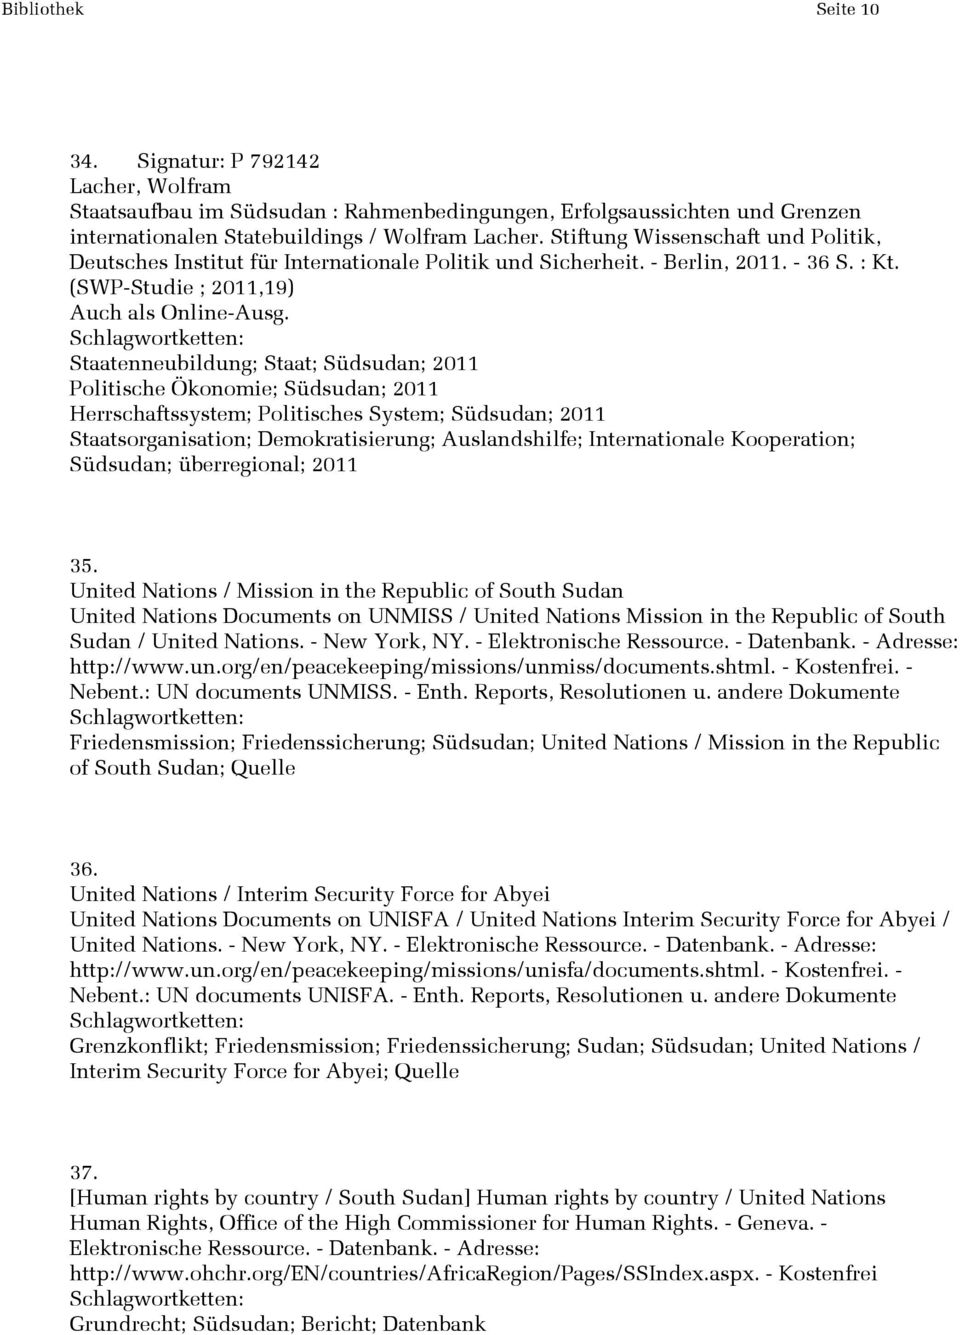 Staatenneubildung; Staat; Südsudan; 2011 Politische Ökonomie; Südsudan; 2011 Herrschaftssystem; Politisches System; Südsudan; 2011 Staatsorganisation; Demokratisierung; Auslandshilfe; Internationale